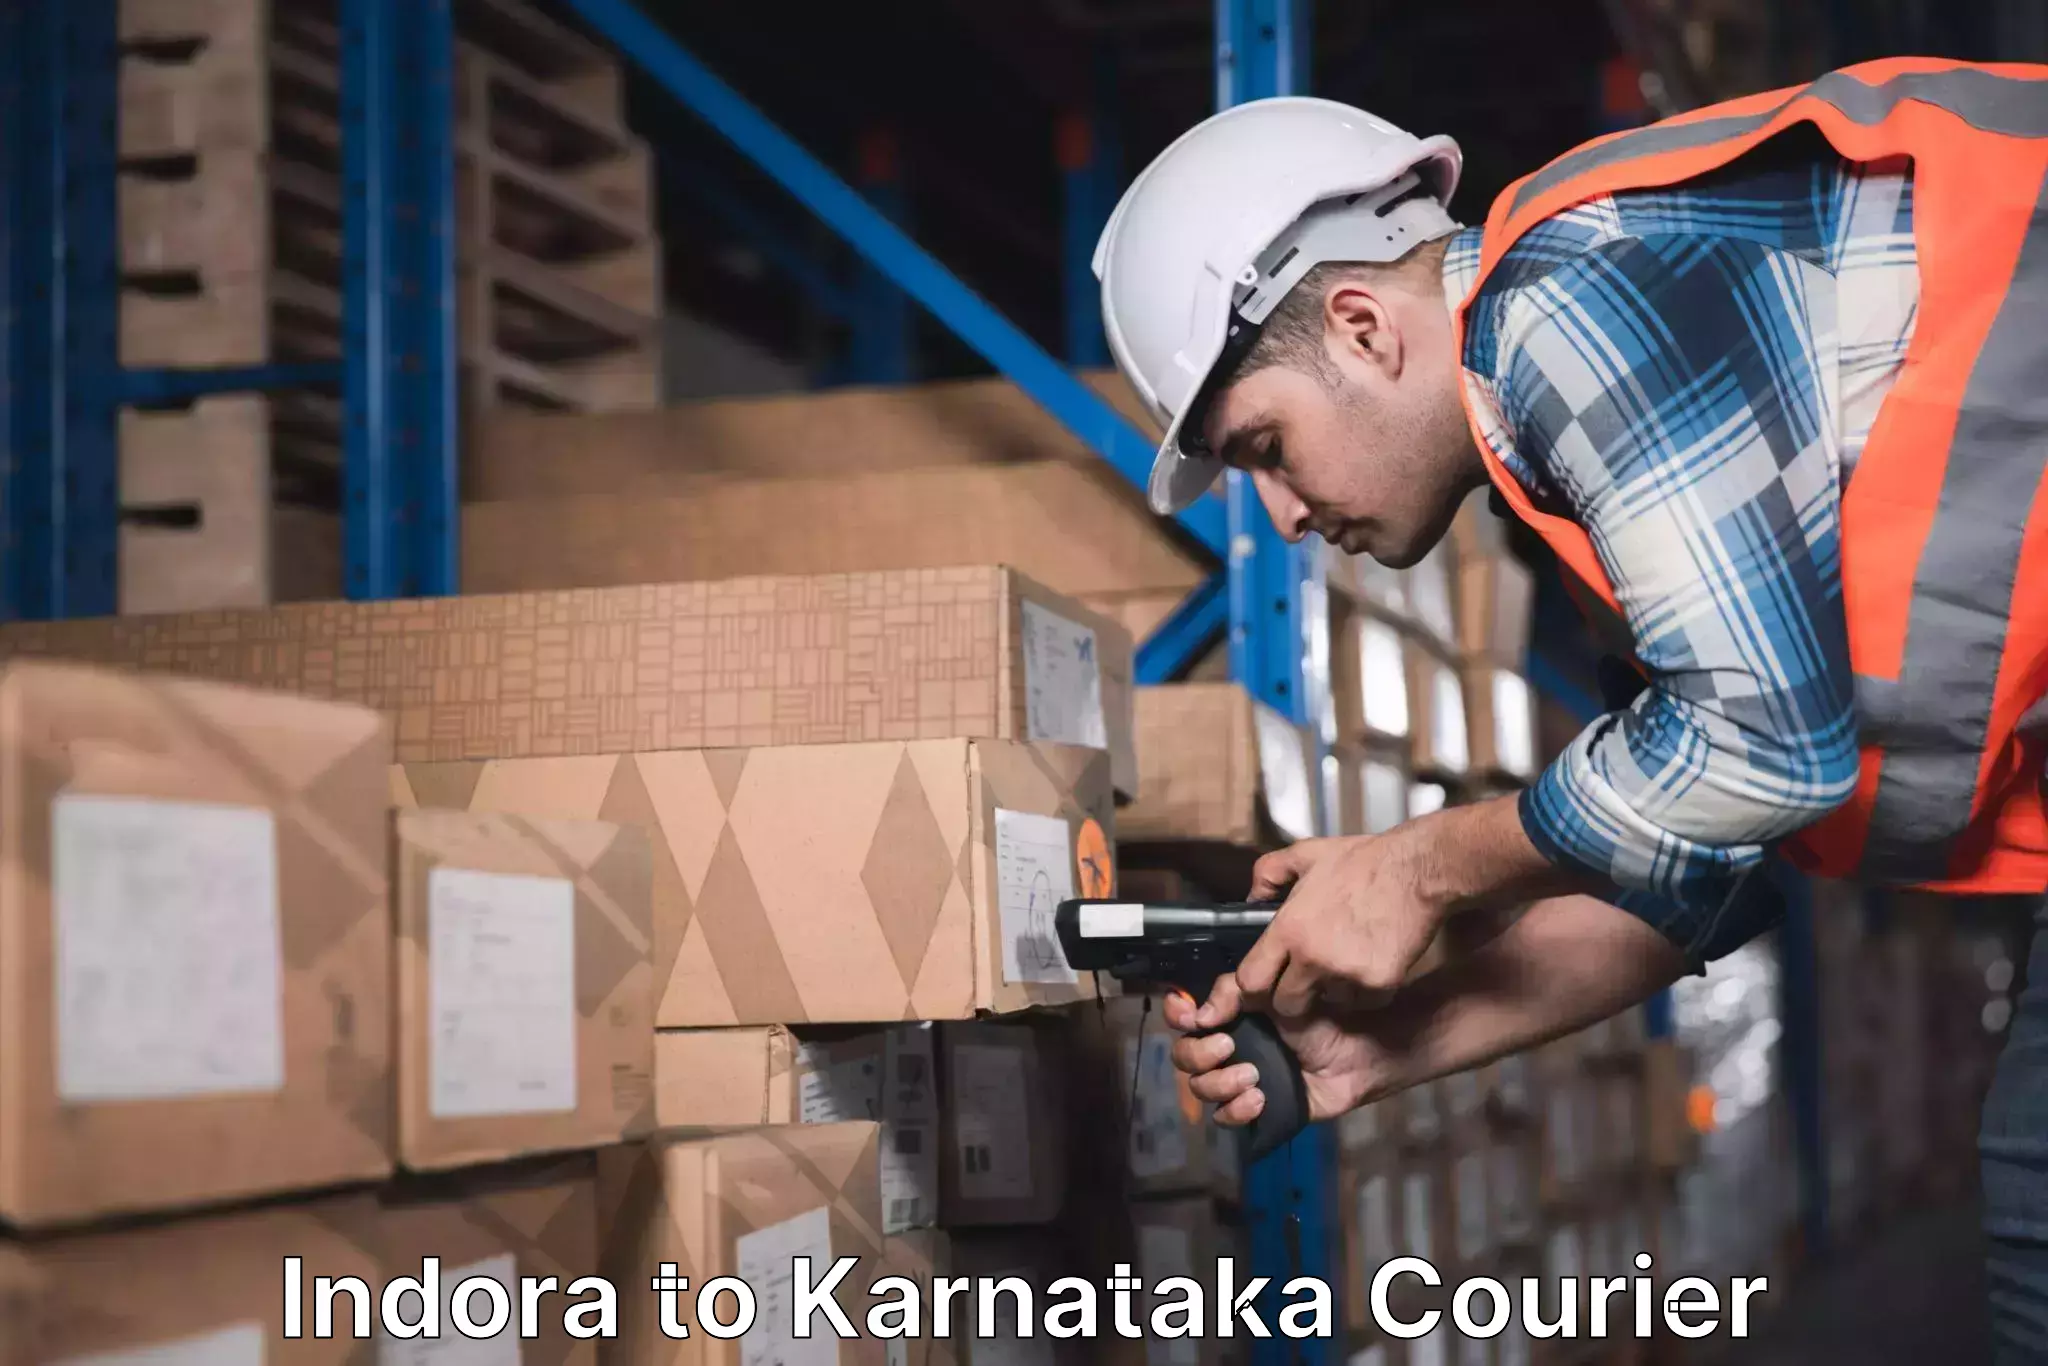 High-speed logistics services in Indora to Karnataka